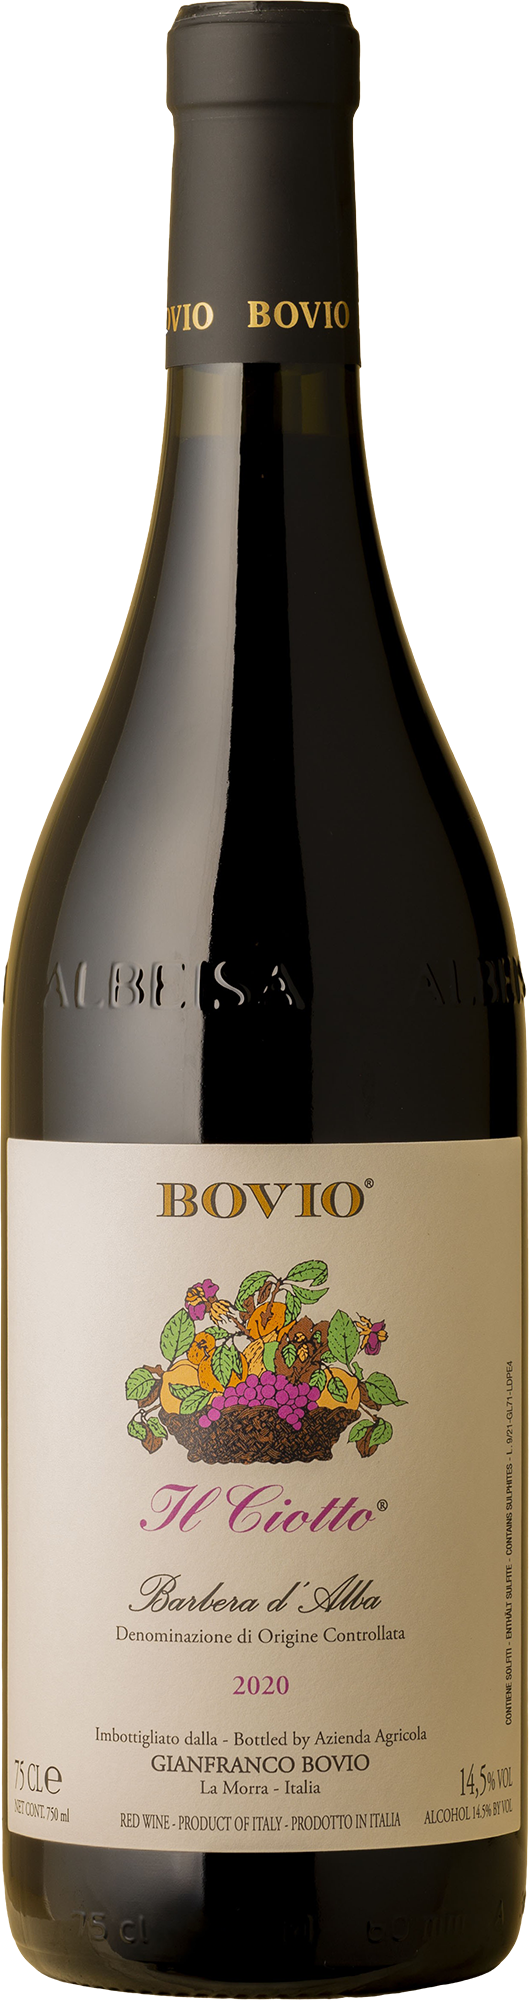 Gianfranco Bovio - II Ciotto Barbera d'Alba 2020 Red Wine